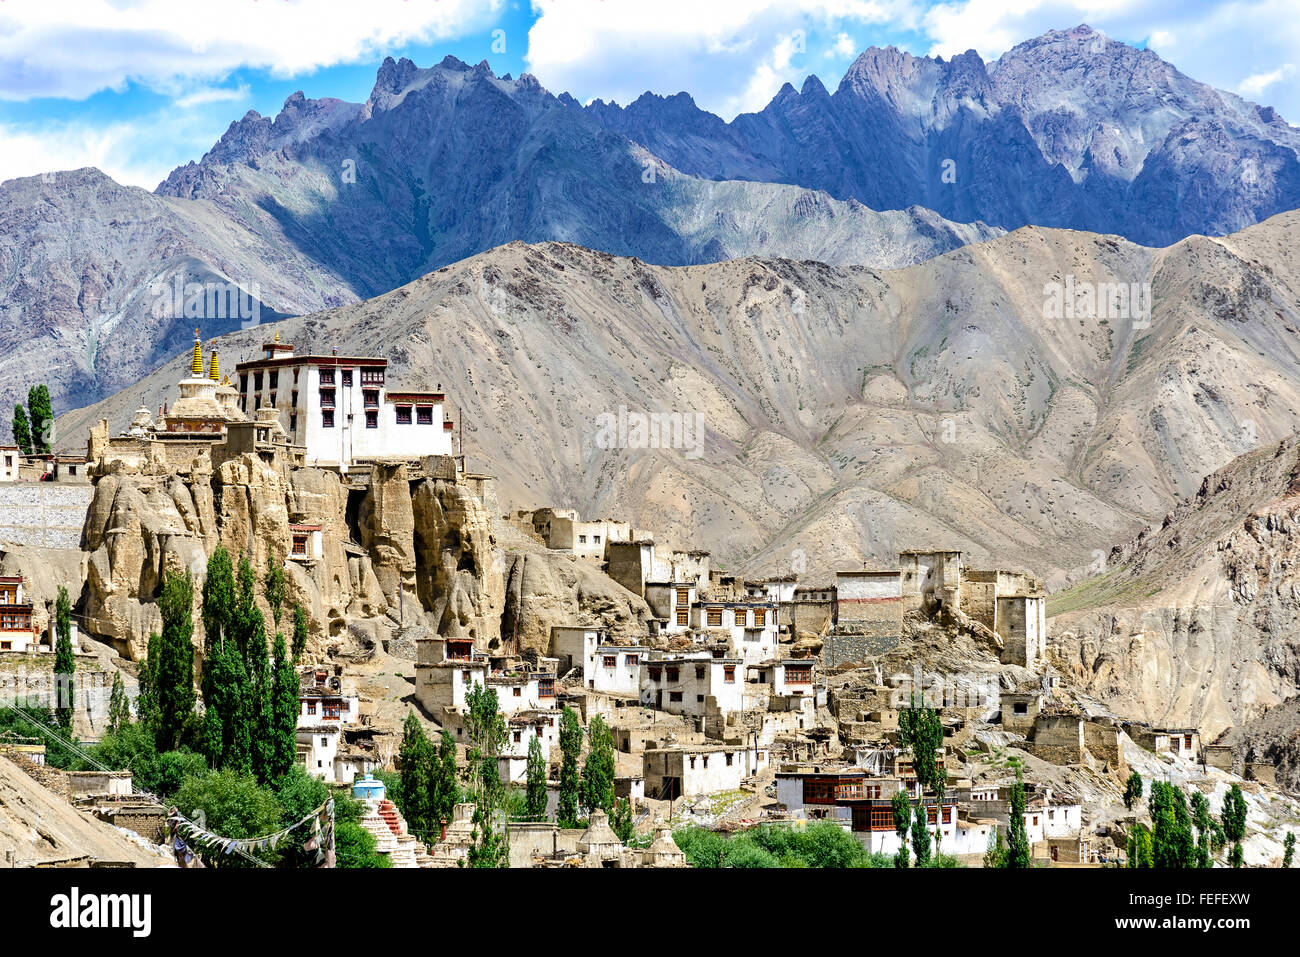 Vue panoramique du monastère de Lamayuru au Ladakh, Inde. Banque D'Images